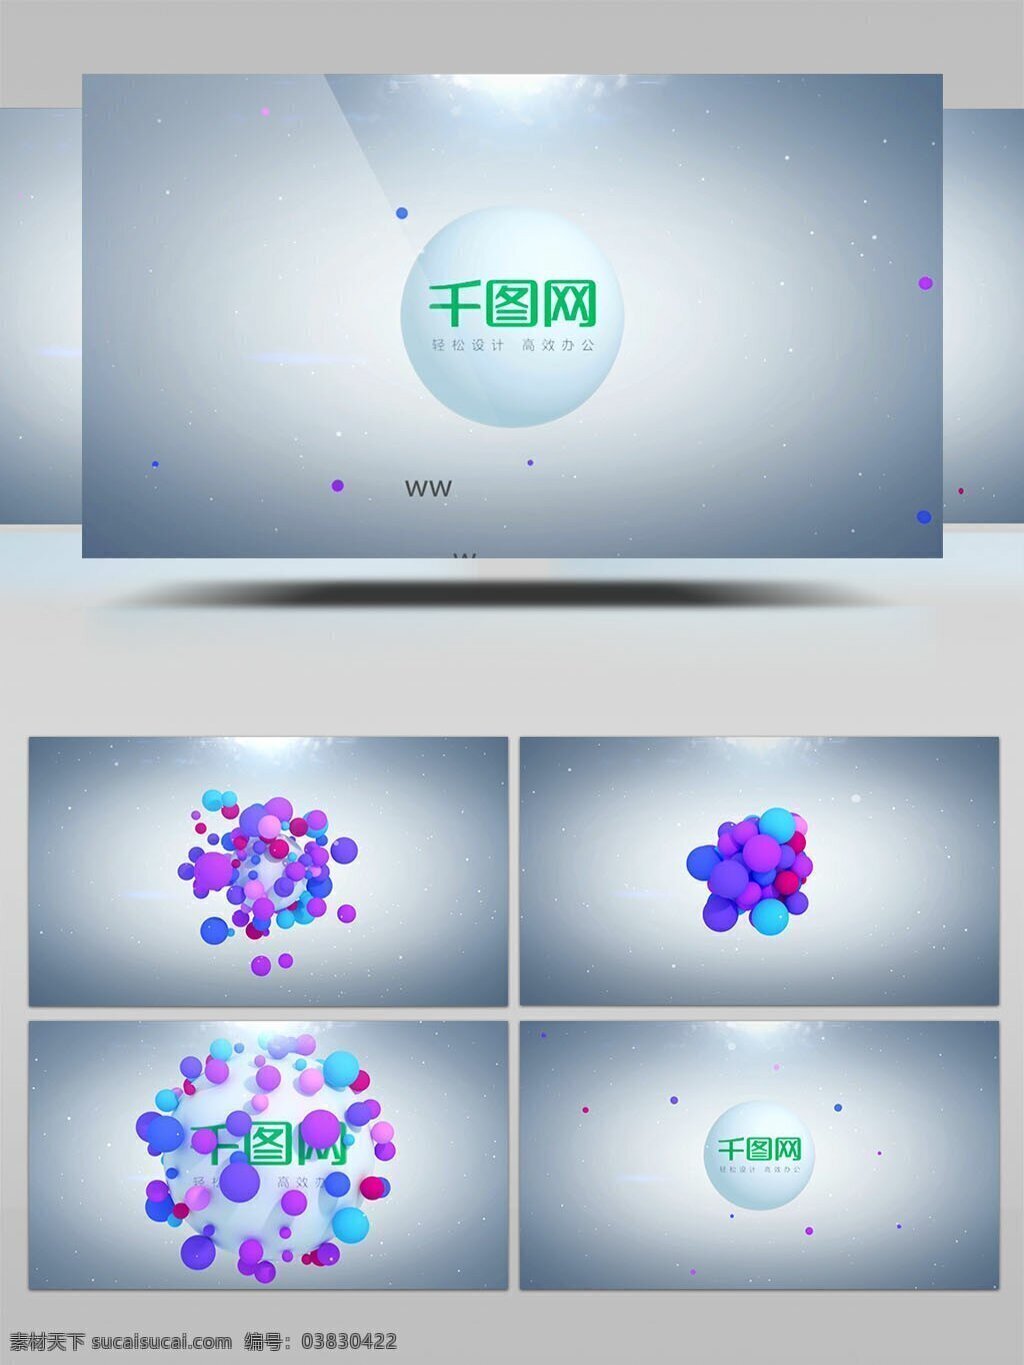 多彩 小球 汇聚 标志 展示 ae 模板 企业 简单 大气 立体小球 融合 logo 演绎 标志动画 彩色小球 球体汇聚